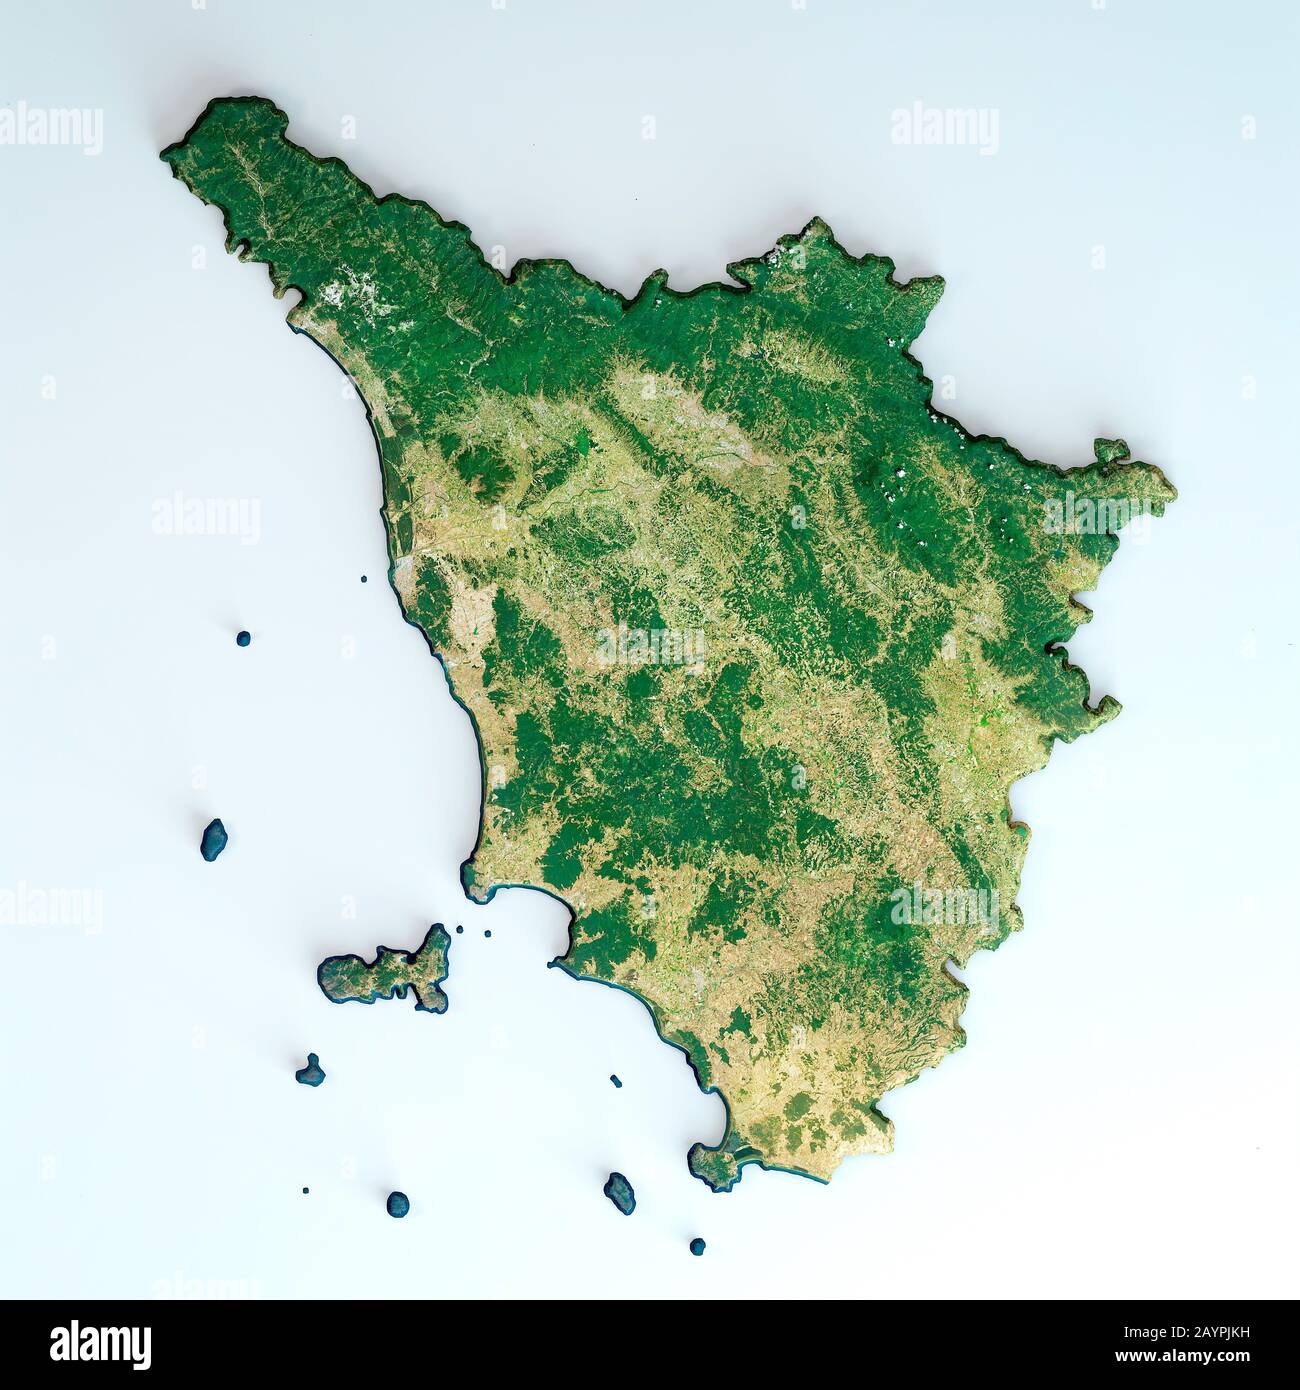 Satellitenansicht der Region Toskana. Italien. 3D-Rendering. Physische Karte von Toscana, Ebenen, Bergen, Seen, Gebirgszug der Apenninen Stockfoto